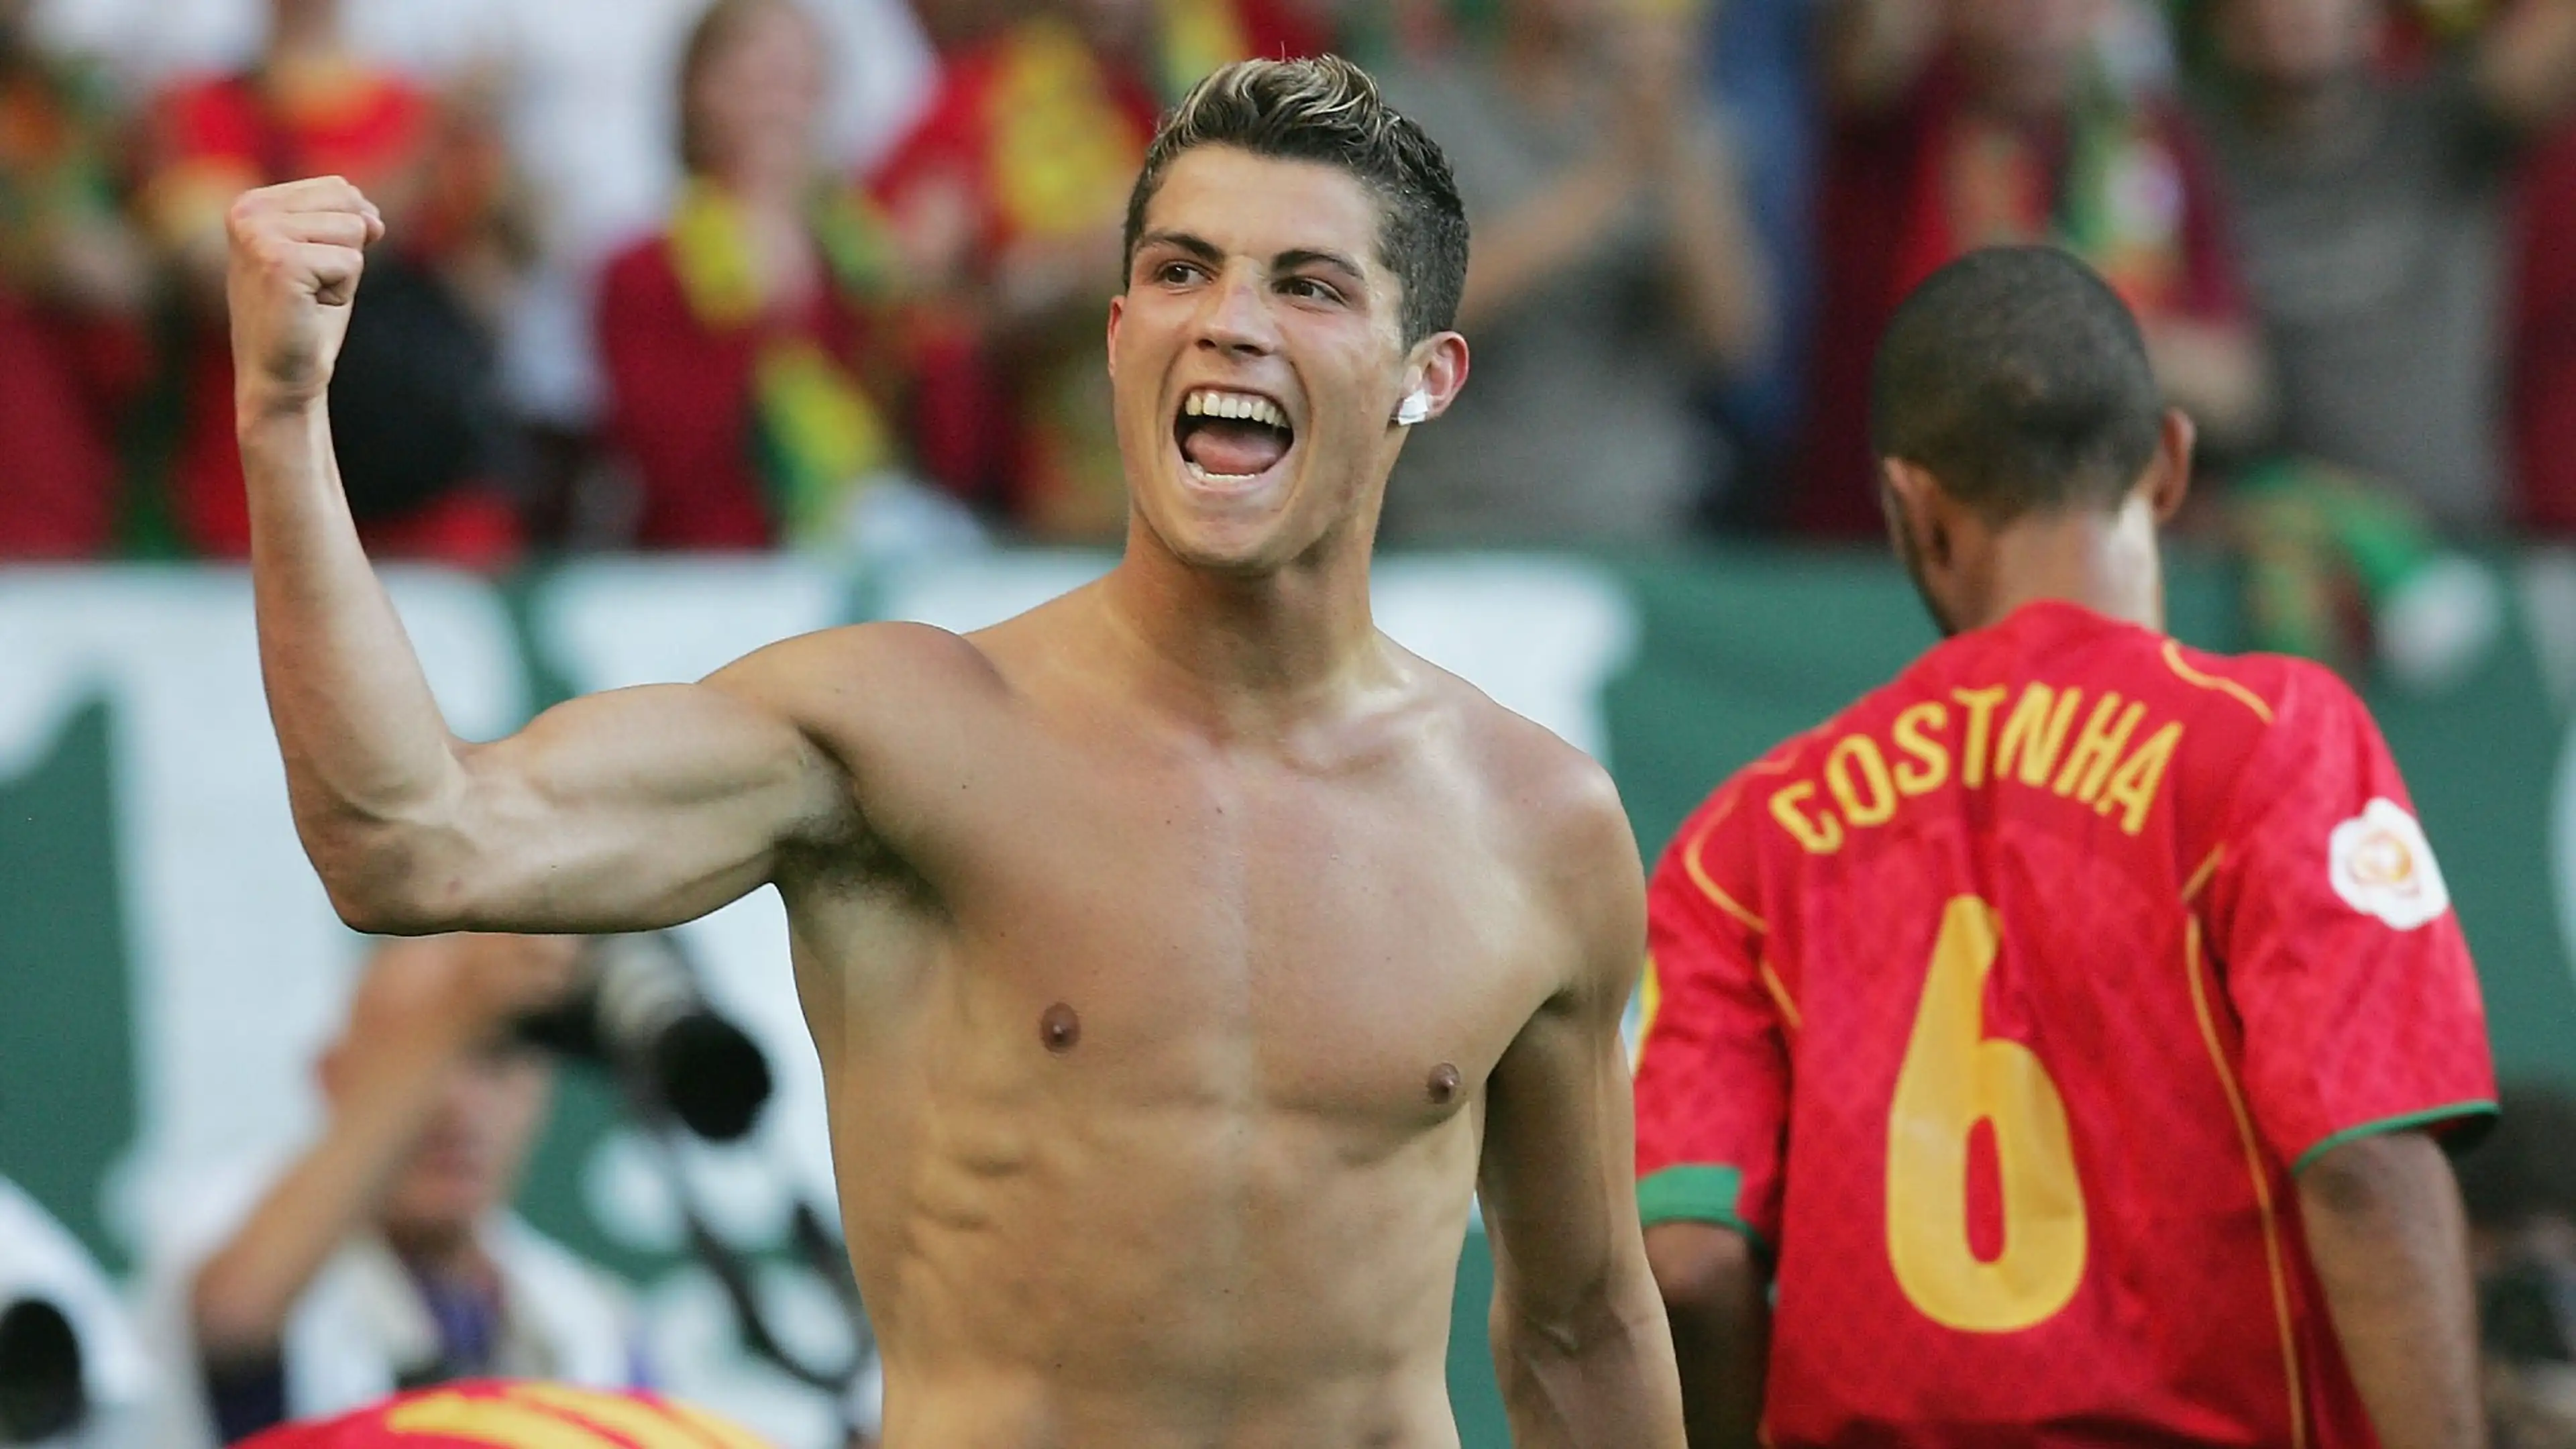 Comunidad Fan Cr7 España: La pasión por Cristiano Ronaldo en un solo lugar | CR7.today